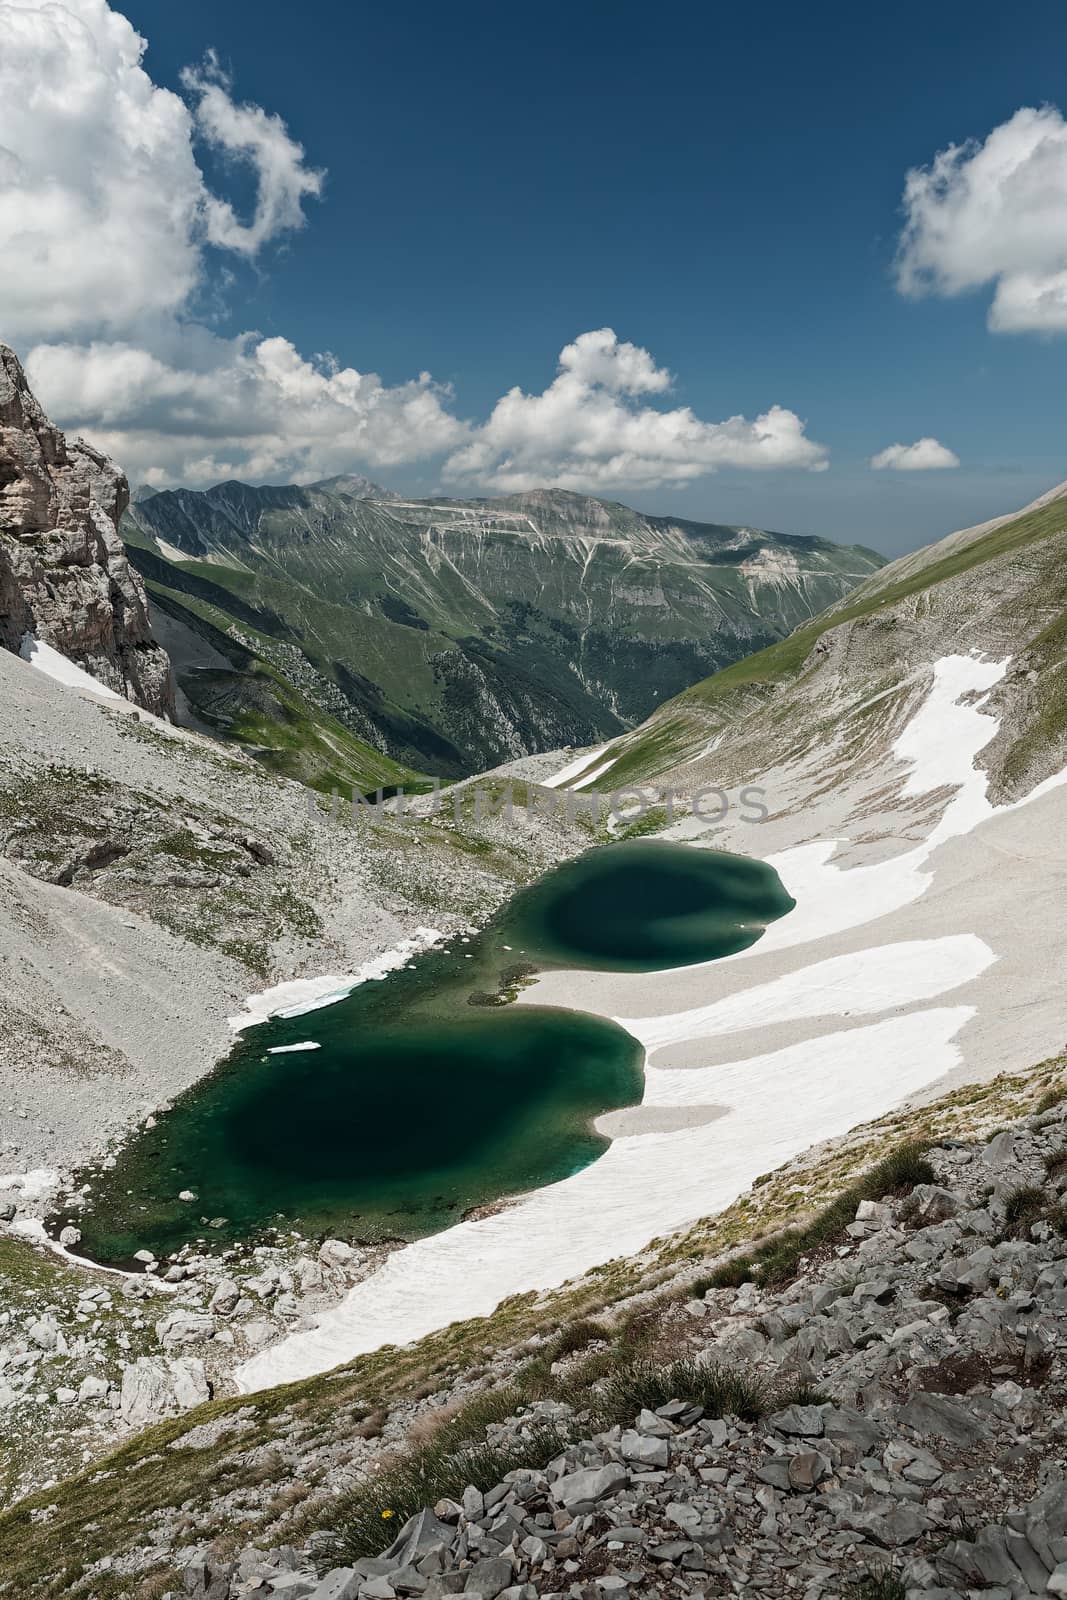 Pilato lake on the Sibillini mountains by LuigiMorbidelli